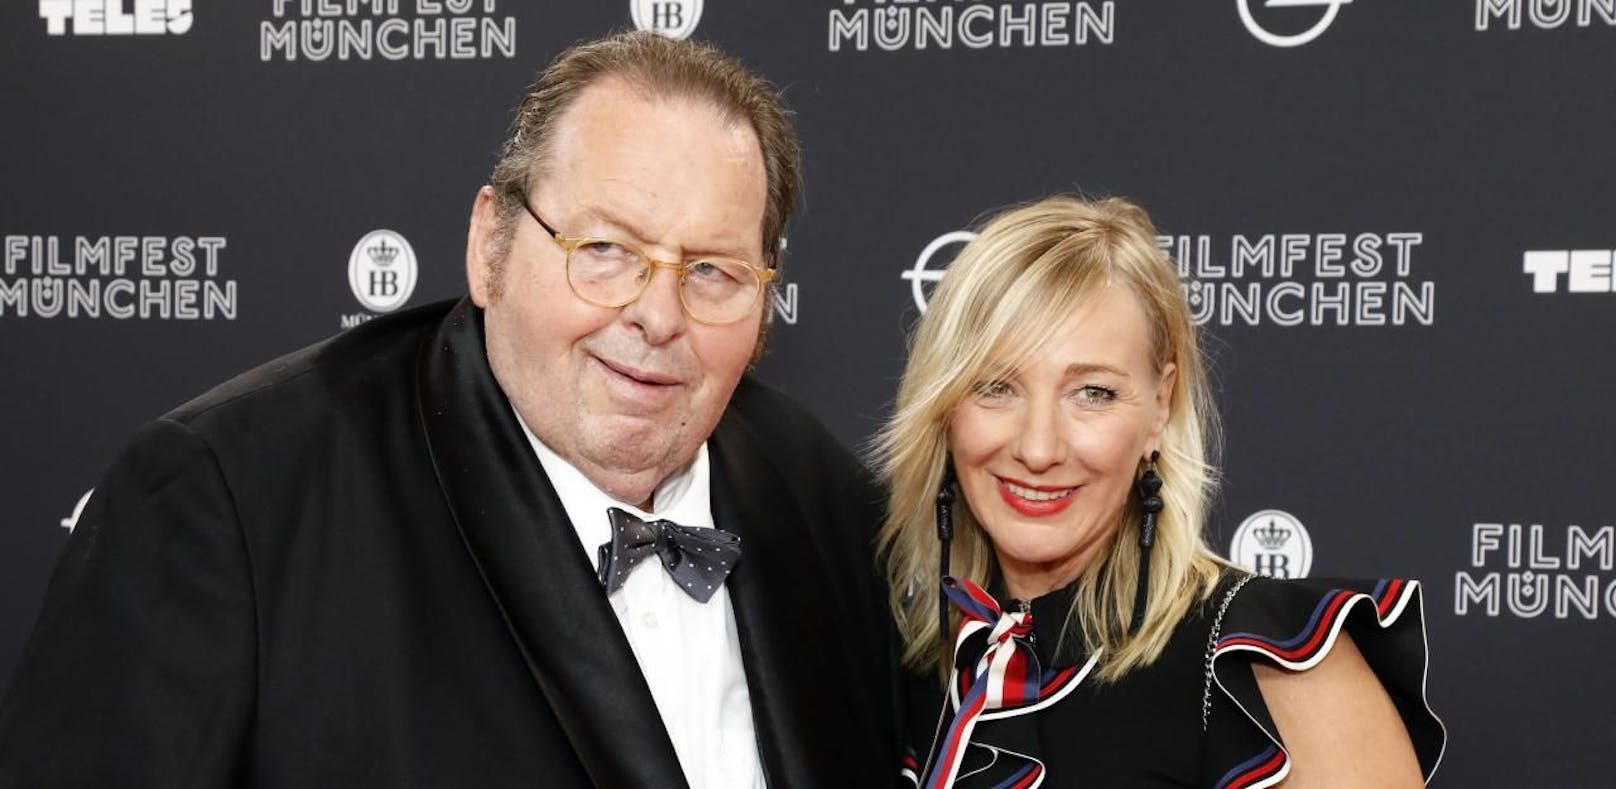 Ottfried Fischer zeigt sich bei Münchner Filmfest